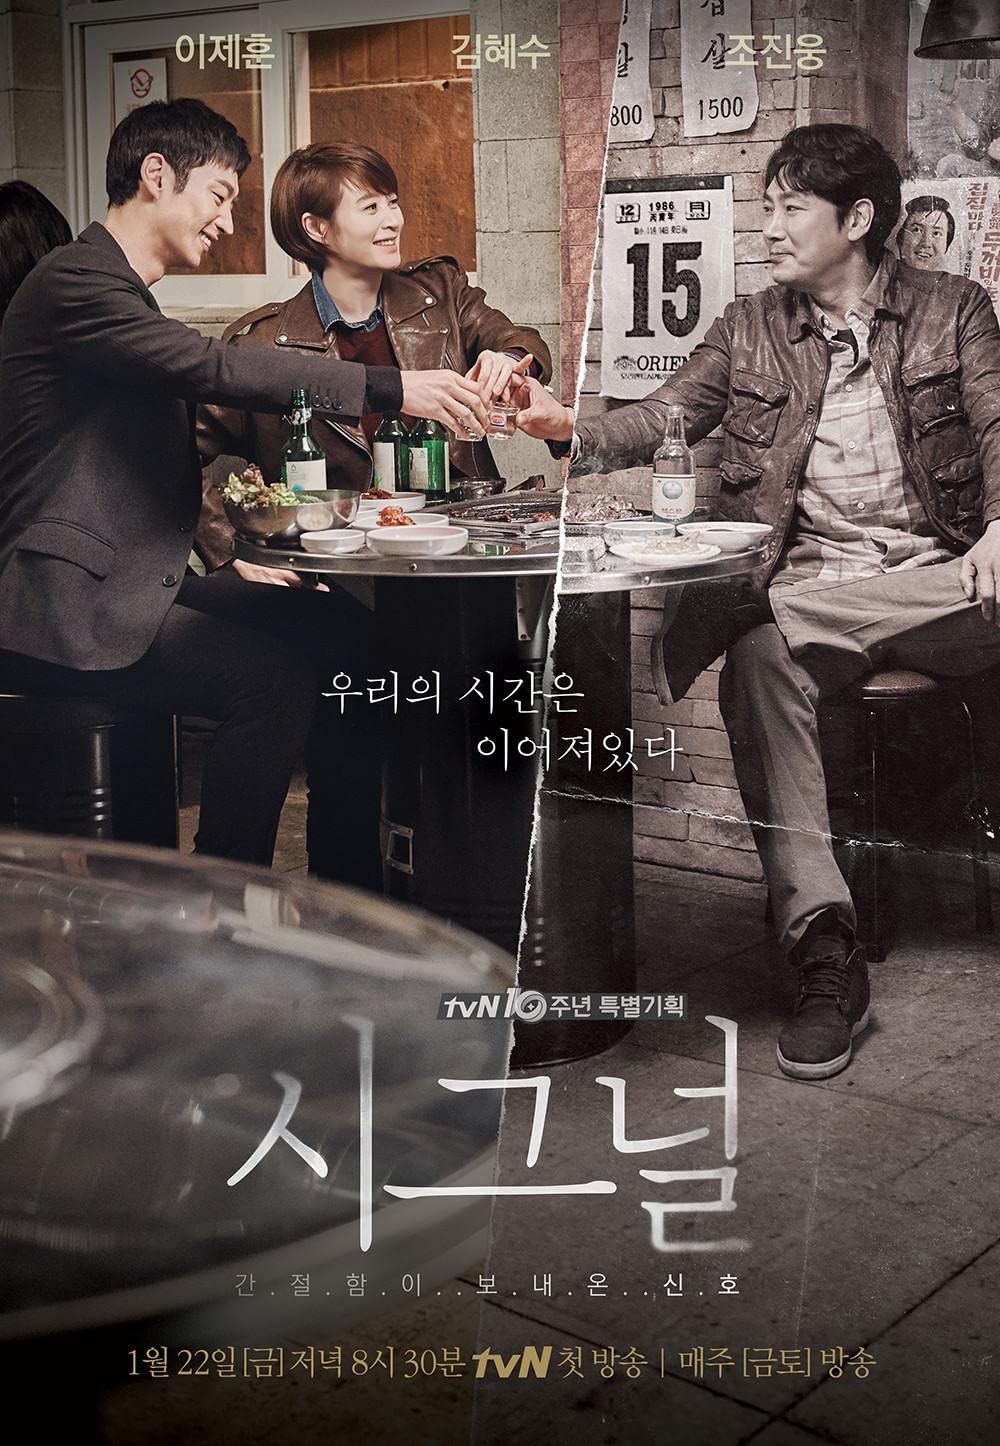 11 Drama Korea dengan rating tertinggi, Move to Heaven puncaki skor